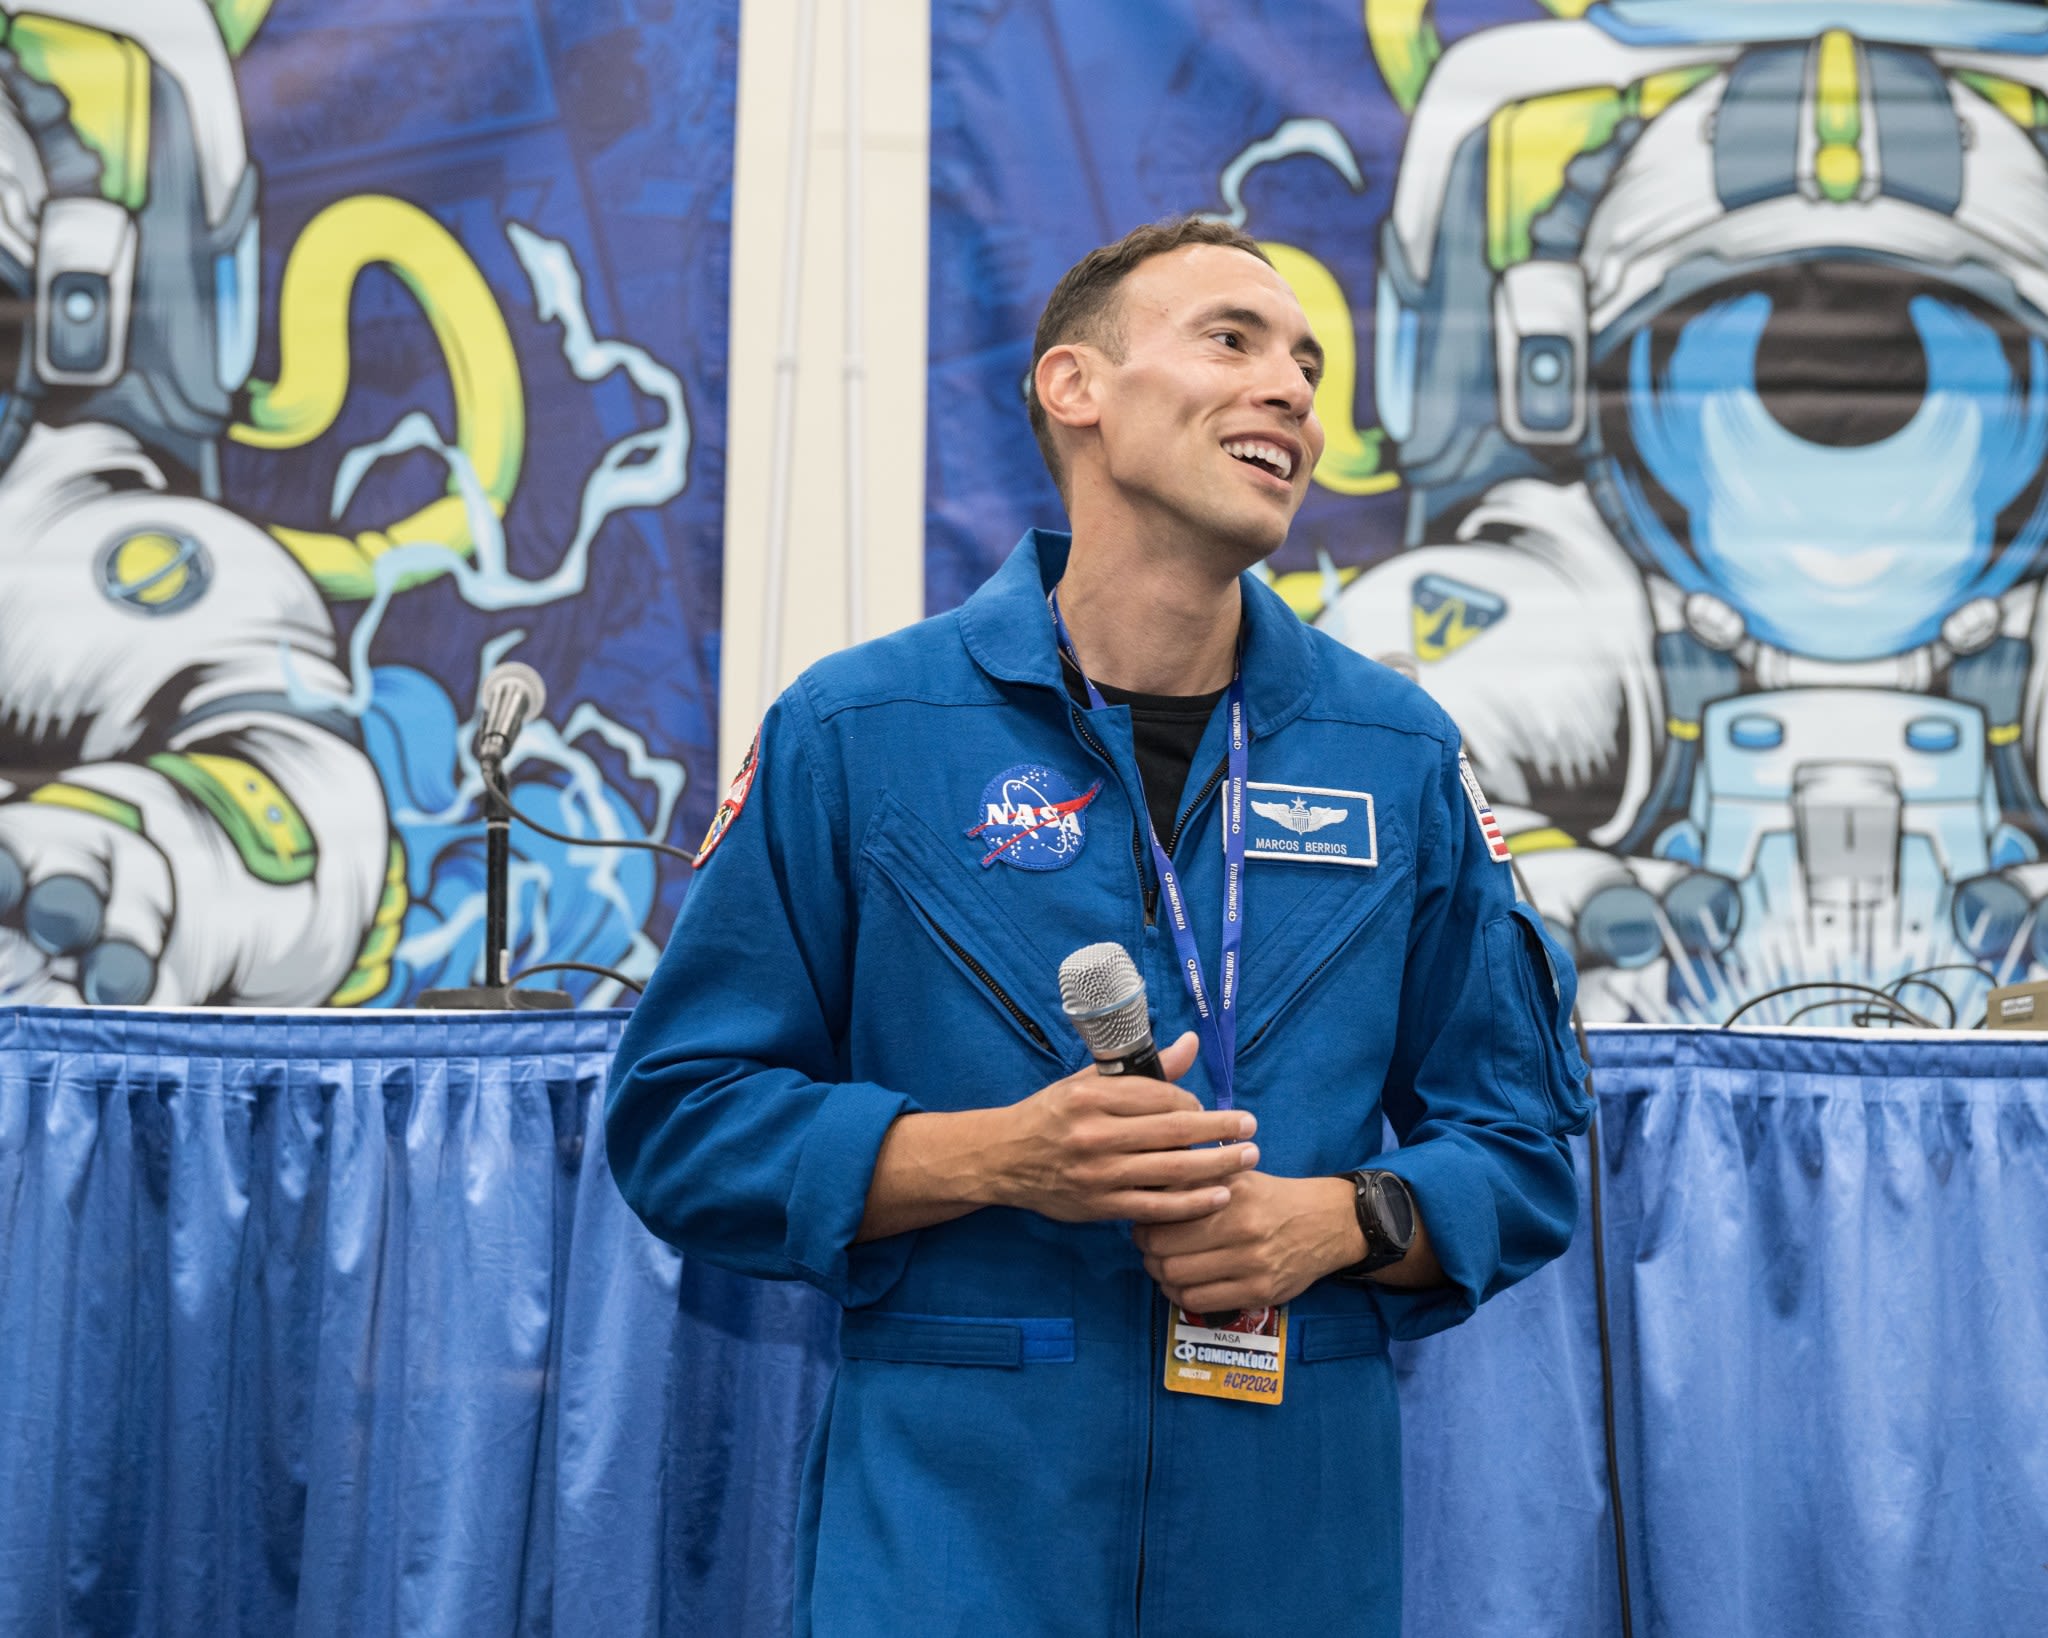 NASA Excites Over 52,000 Fans at Comicpalooza - NASA